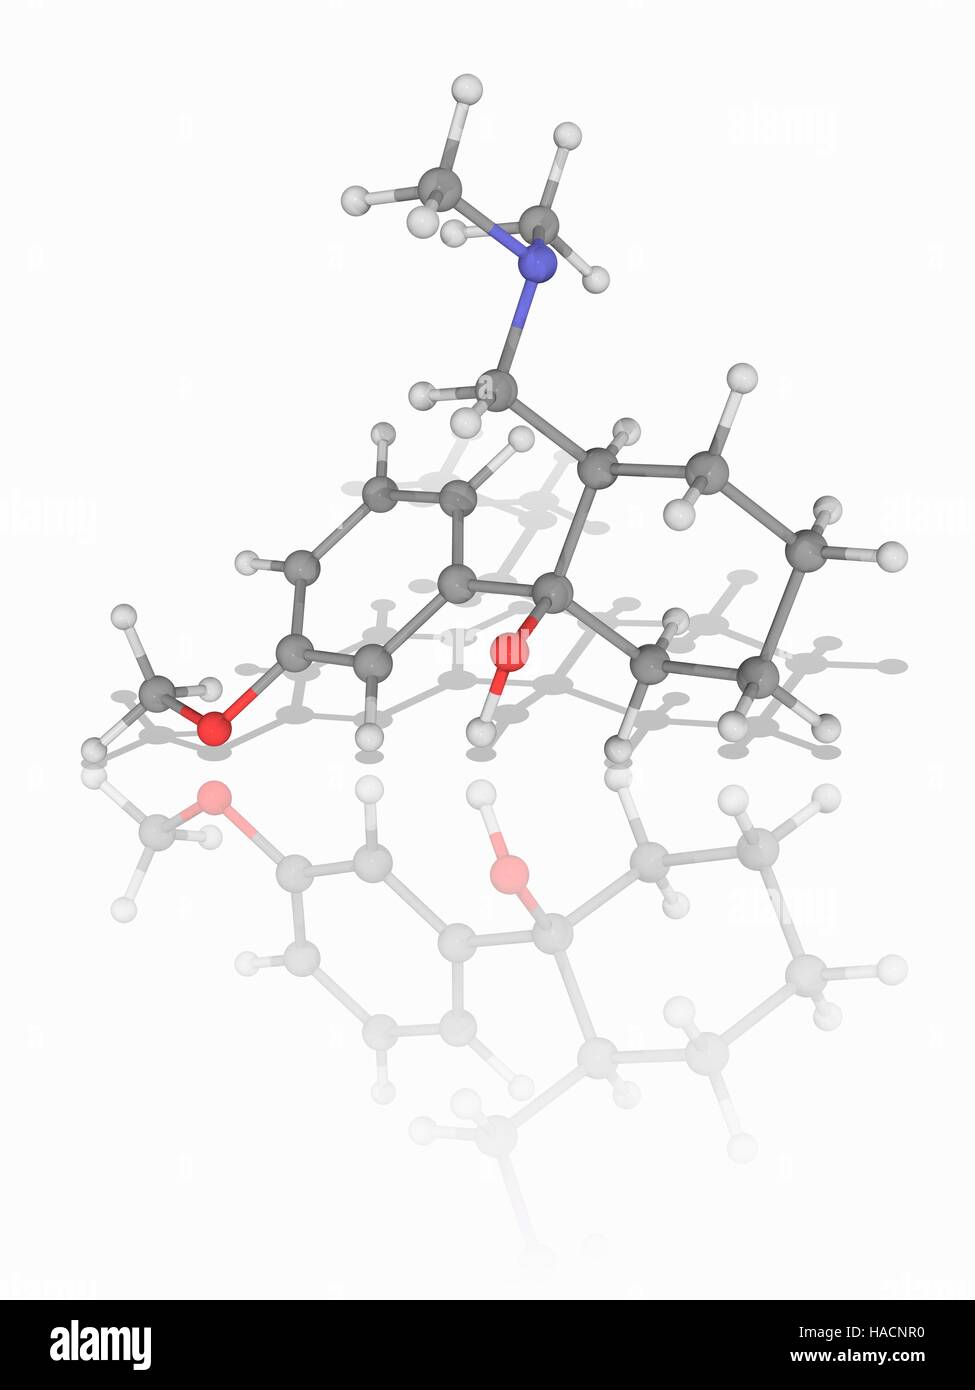 Tramadol. Molekulares Modell des Medikaments Tramadol (C16. H25. N.O2), eine zentral wirkende synthetische opioid-Analgetikum zur Behandlung von starken Schmerzen. Atome als Kugeln dargestellt werden und sind farblich gekennzeichnet: Kohlenstoff (grau), Wasserstoff (weiß), Stickstoff (blau) und Sauerstoff (rot). Abbildung. Stockfoto